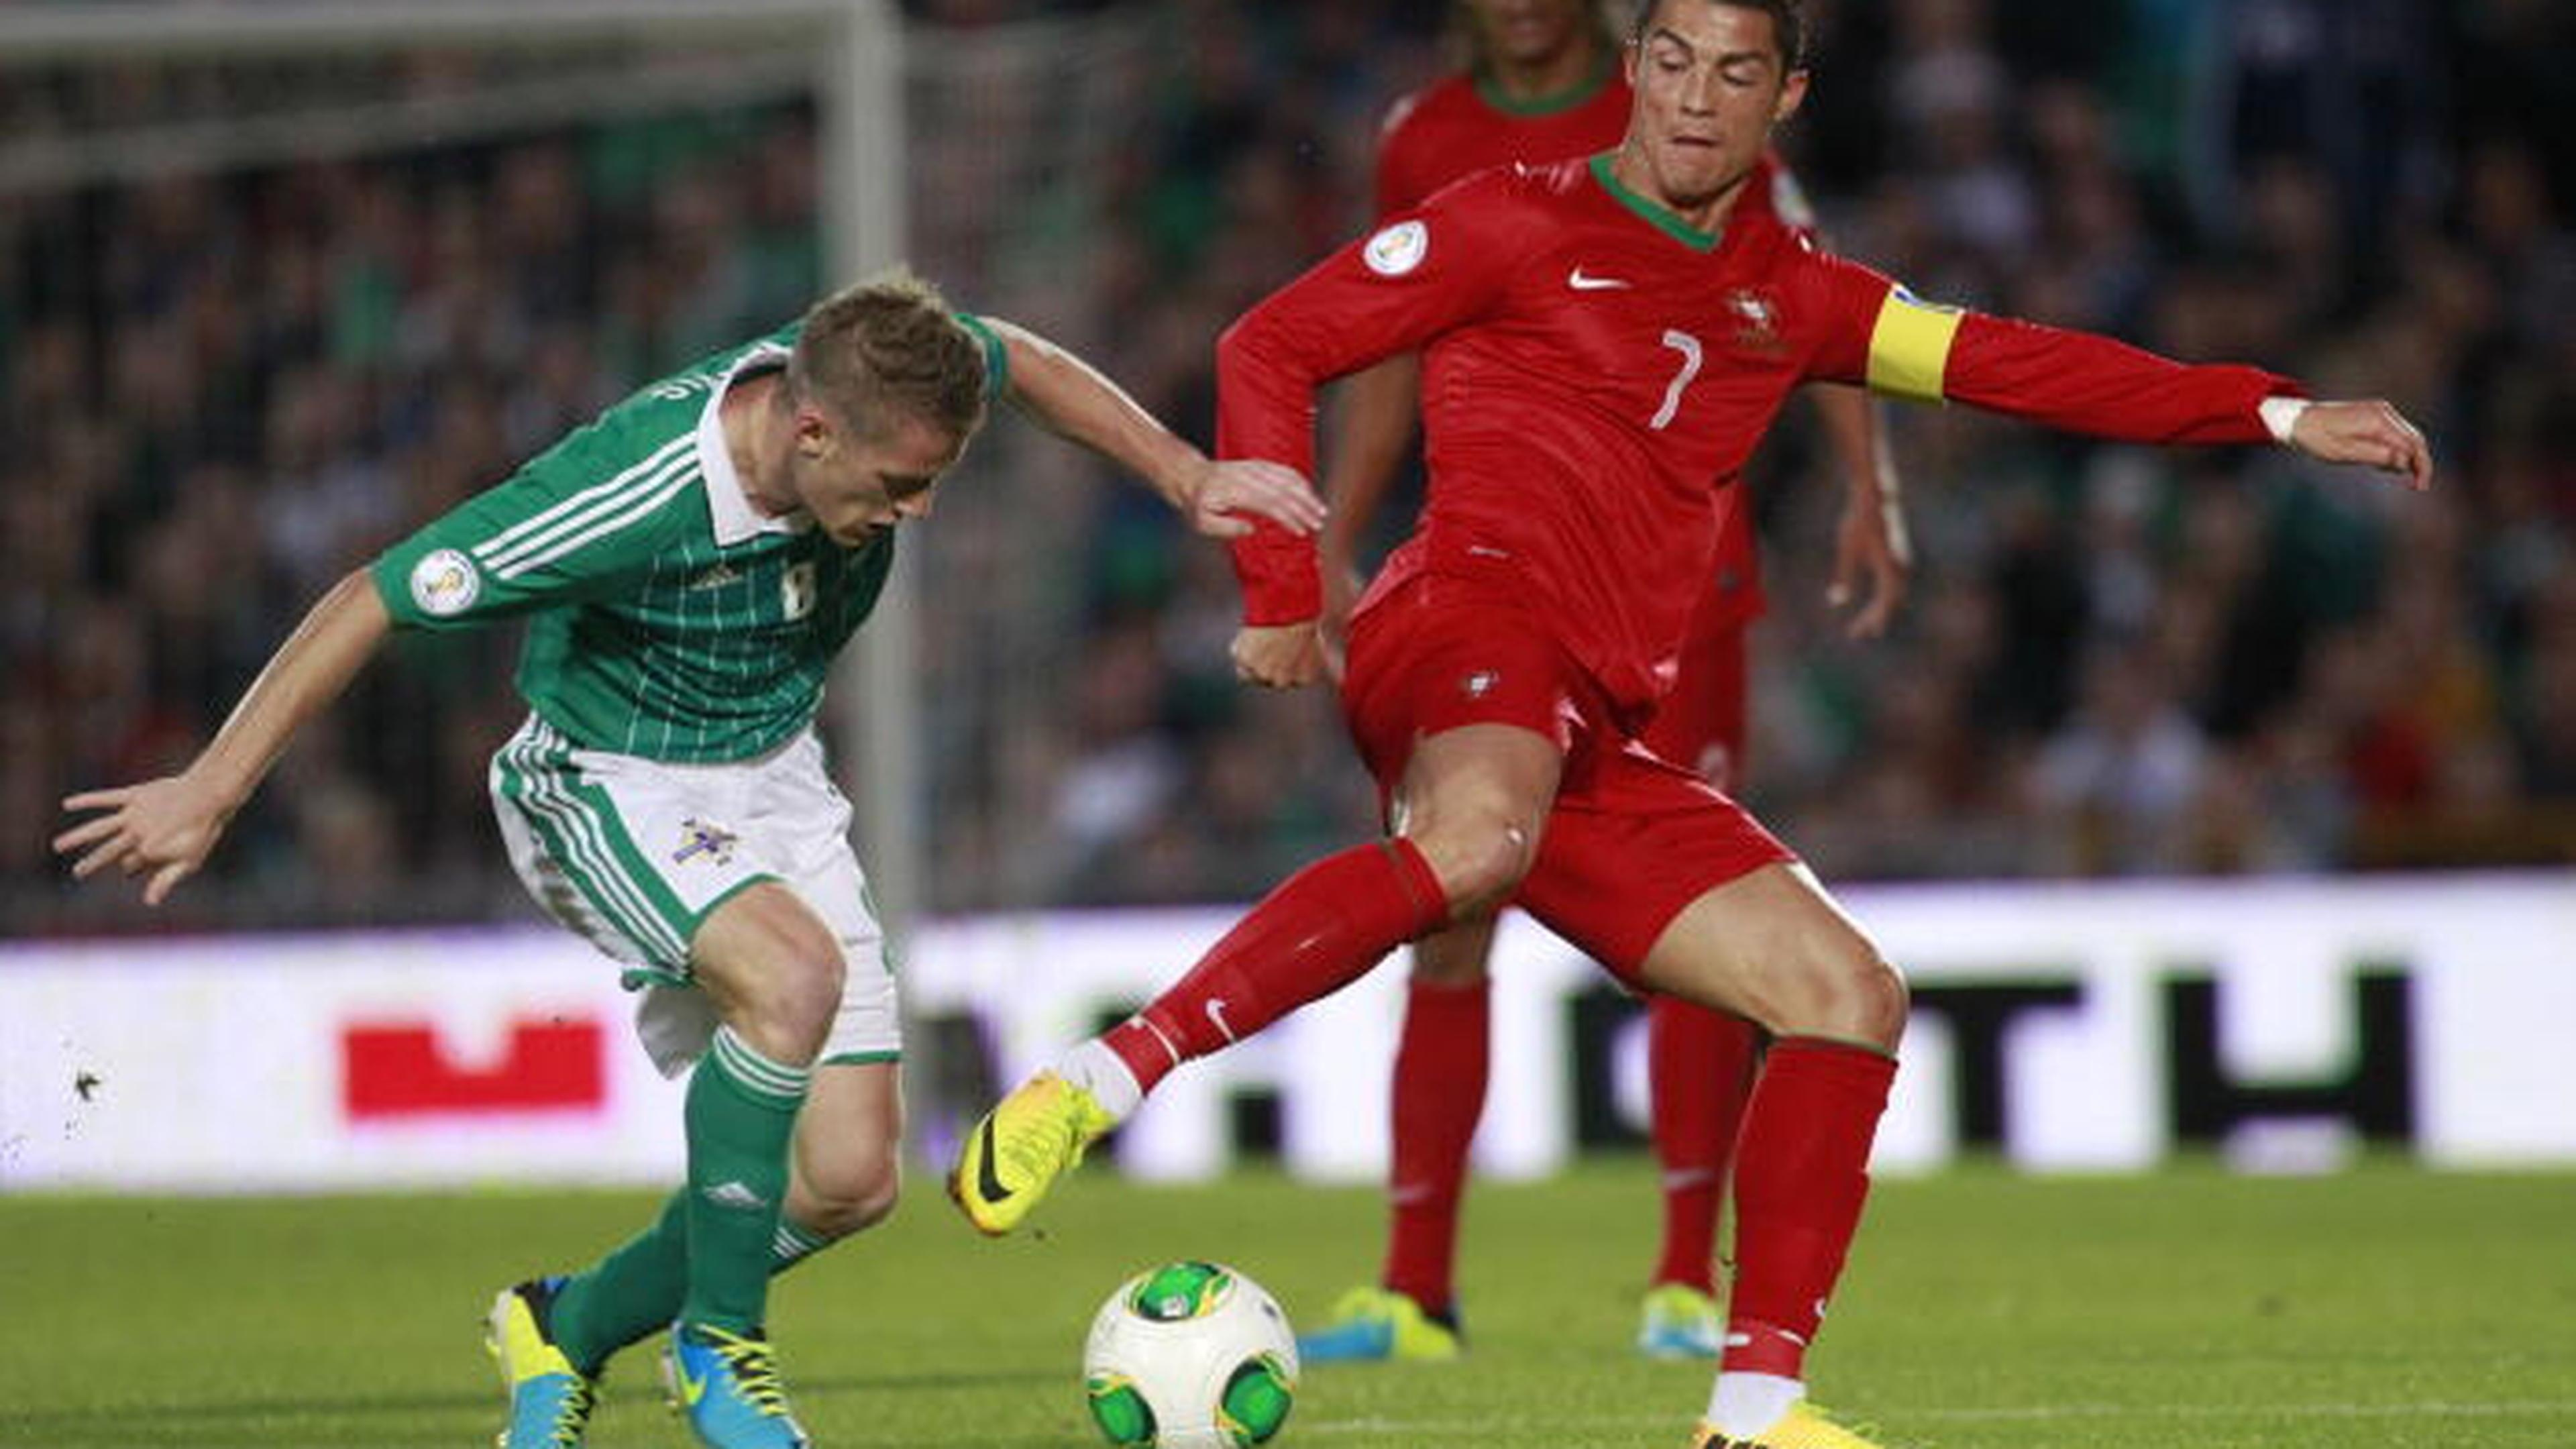 Cristiano Ronaldo marcou três golos esta noite no jogo contra a Irlanda. Aqui numa disputa de bola com Steven Davis da selecção da Irlanda do Norte